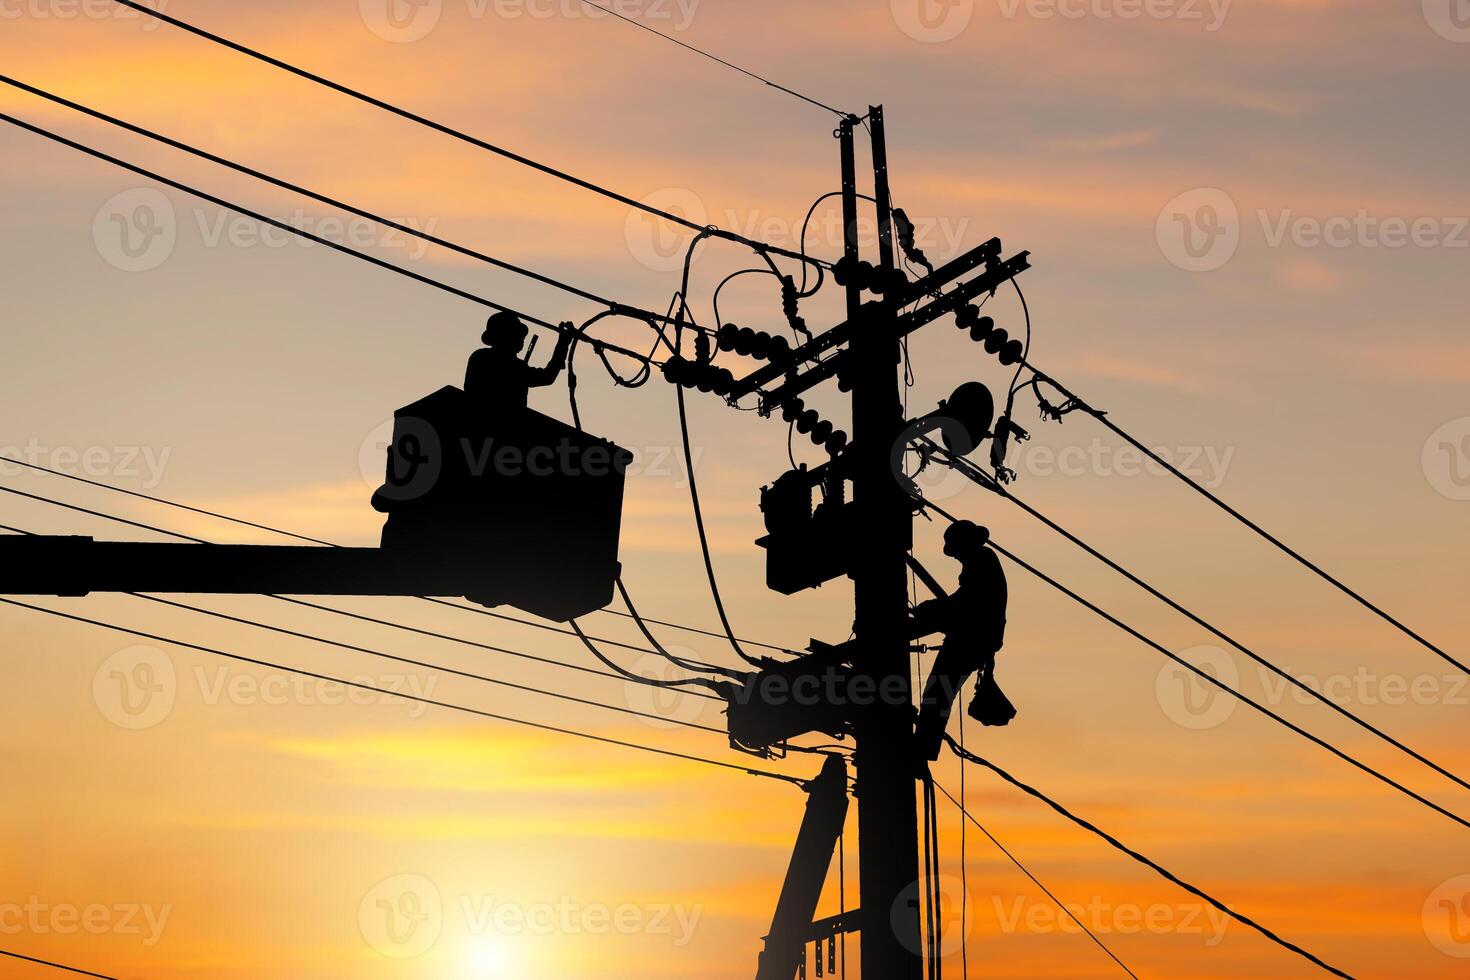 la silueta de un oficial electricista sube a un poste y usa un teleférico para mantener un sistema de línea de alto voltaje, la sombra de un trabajador reparador de liniero electricista en el trabajo de escalada en un poste de energía eléctrica foto